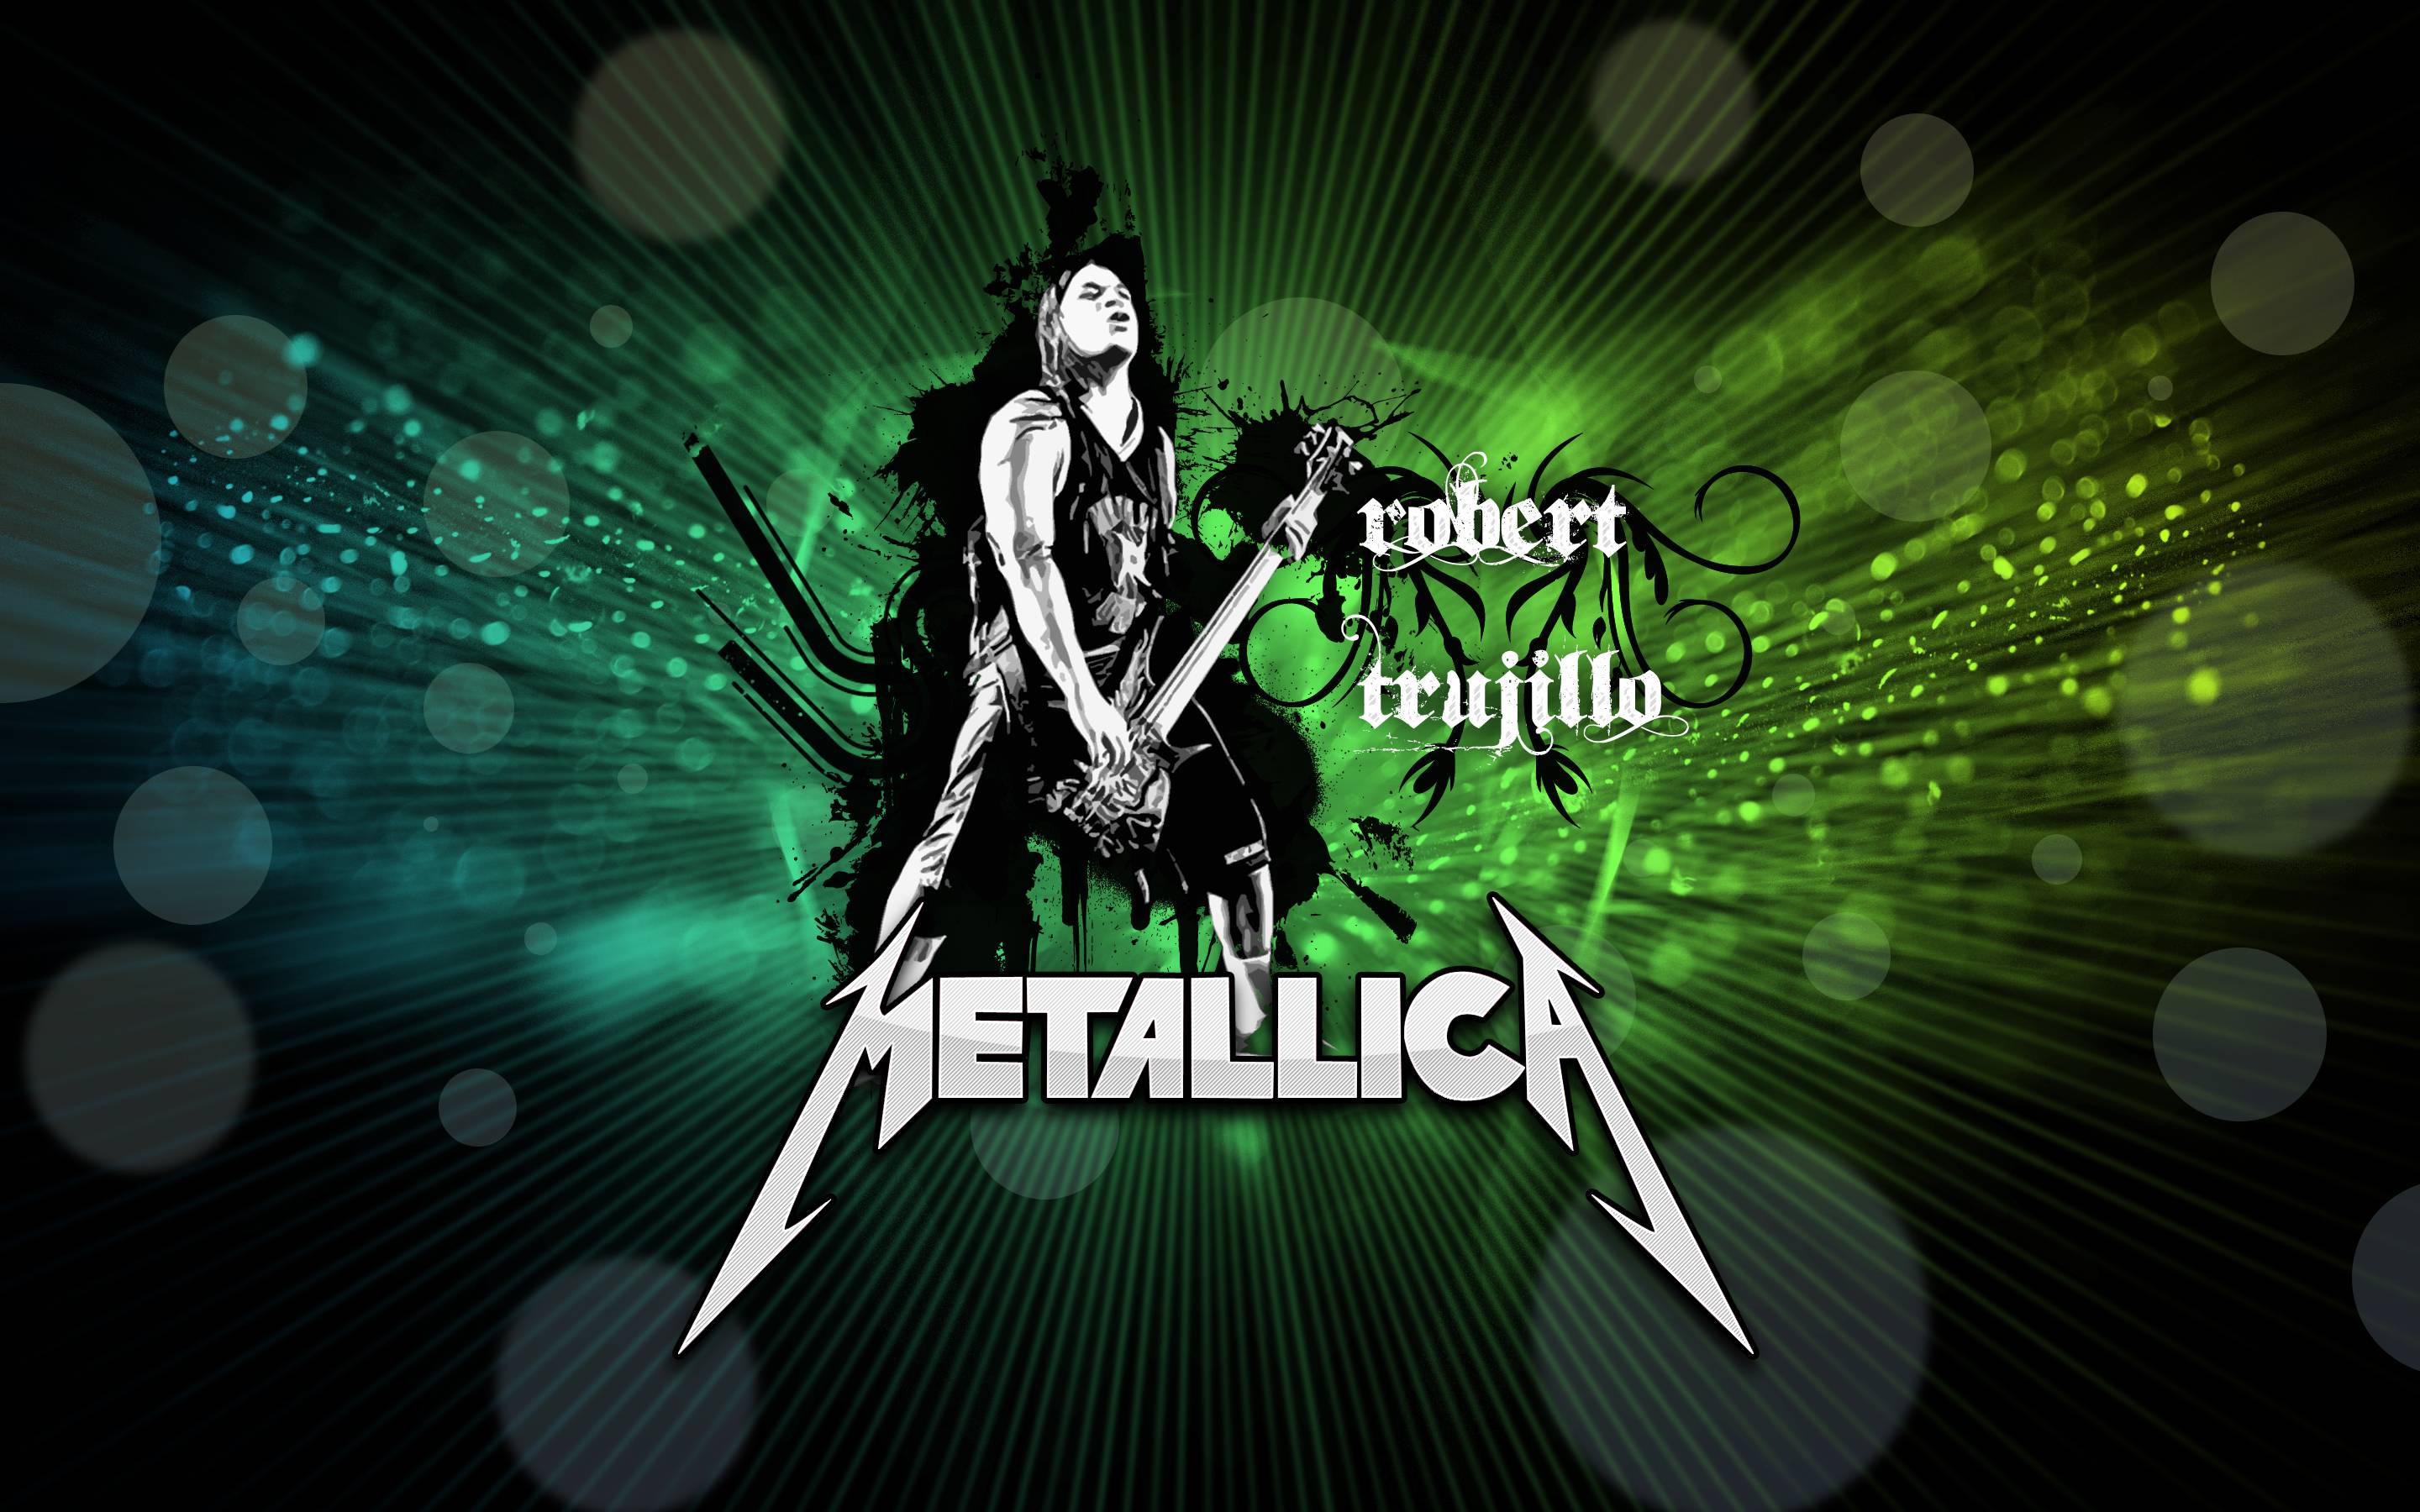 Metallica Computer Wallpaper, Desktop Background 2880x1800 Id